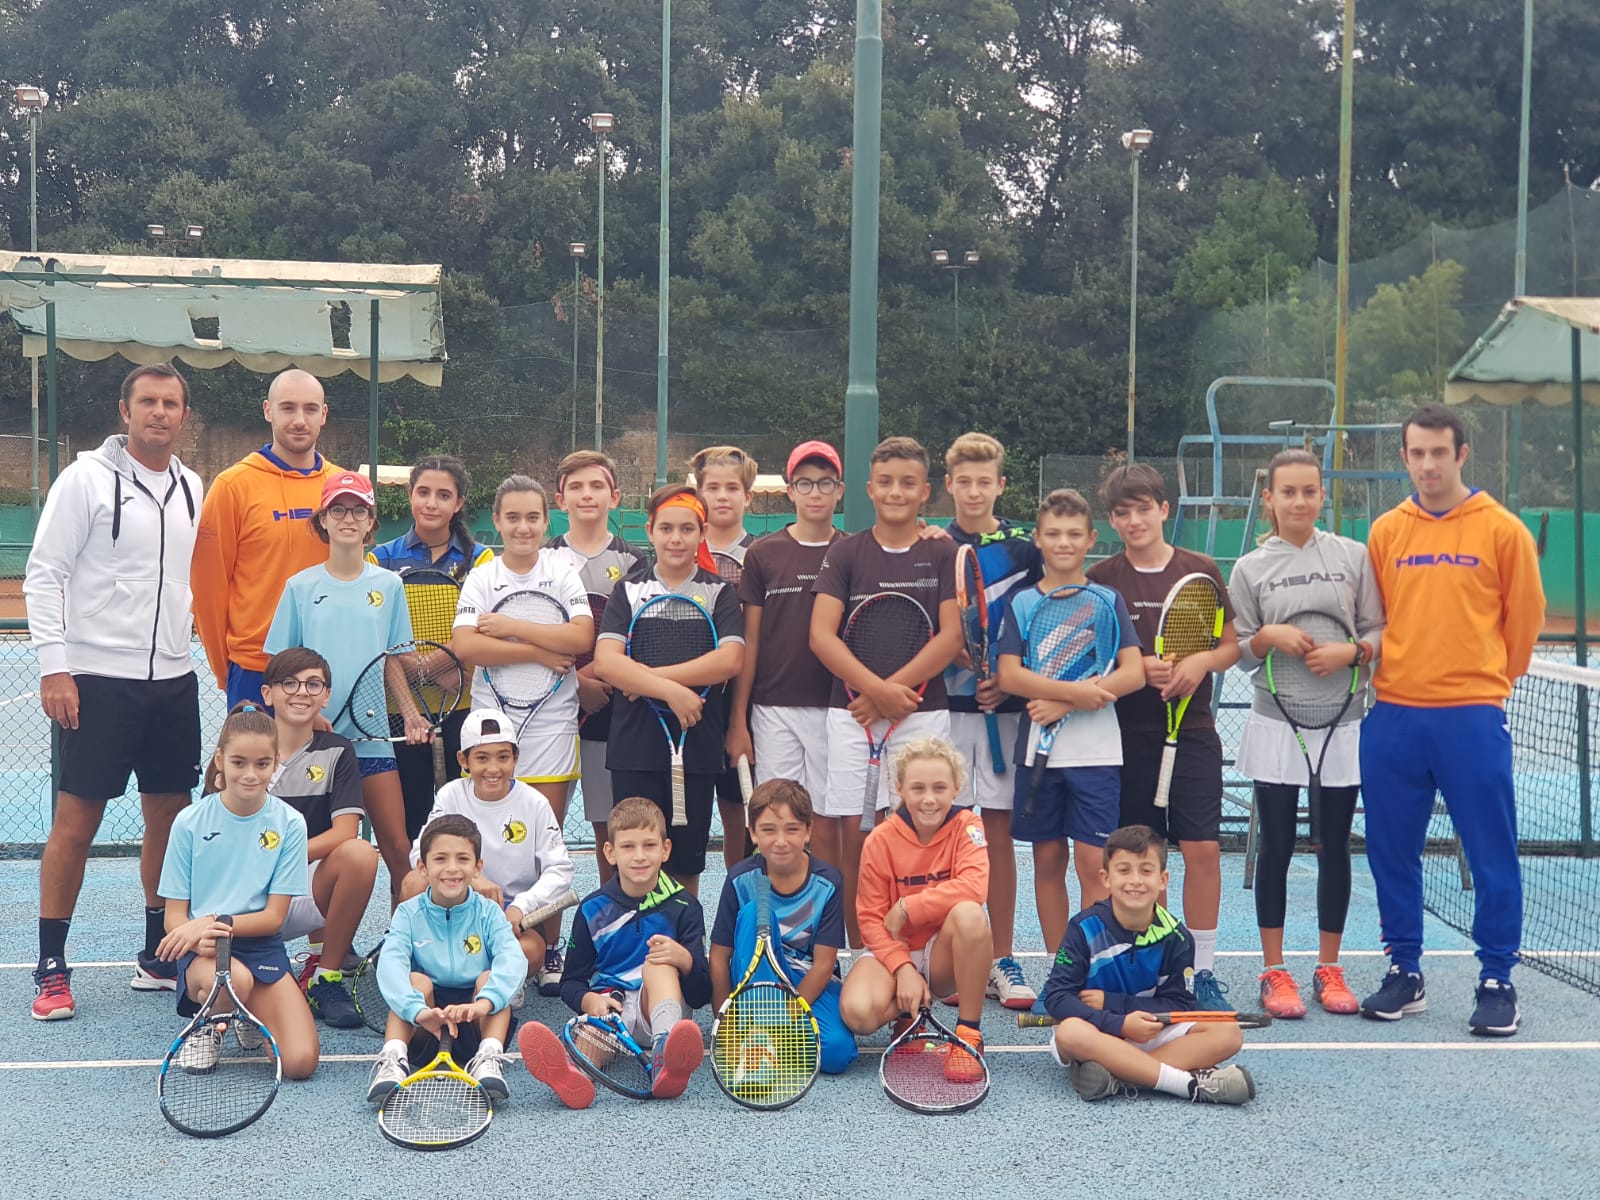 ACCADEMIA PORTE APERTE. TC Ercole Caserta e Accademia Tennis Napoli intensificano amichevoli e scambi di programmi.